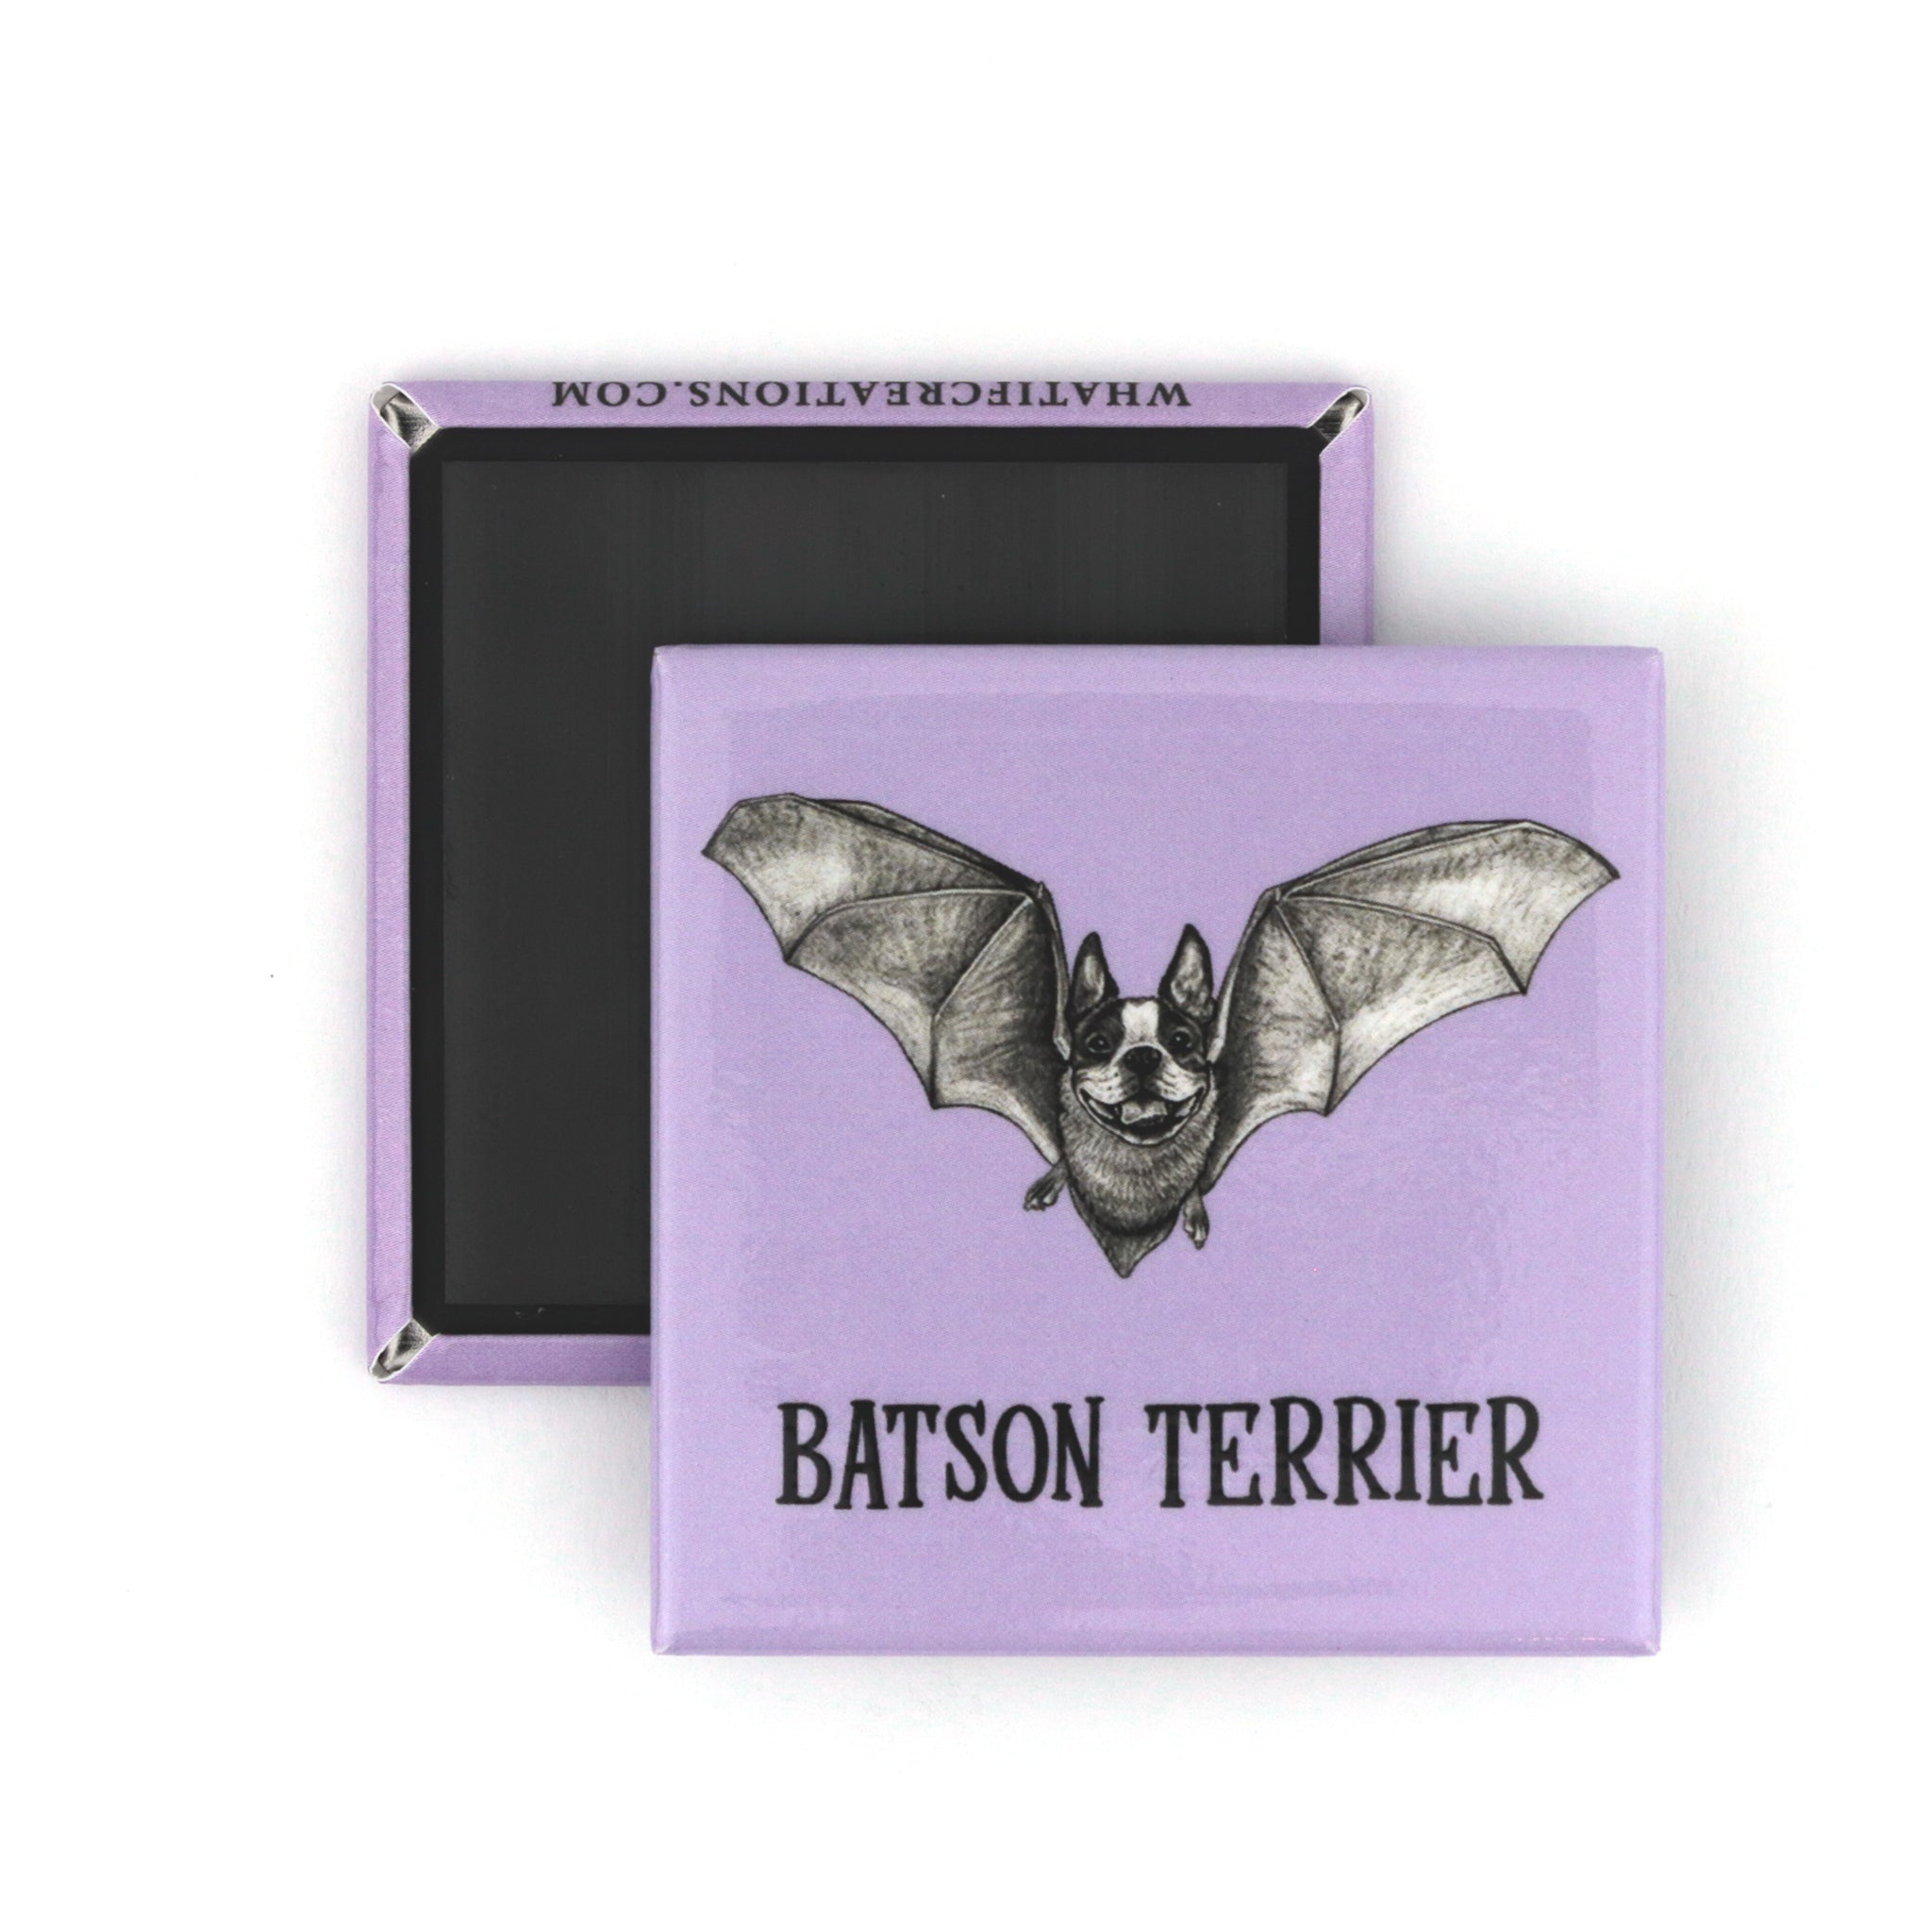 Batson Terrier | Boston Terrier + Bat Hybrid Animal | 2" Fridge Magnet